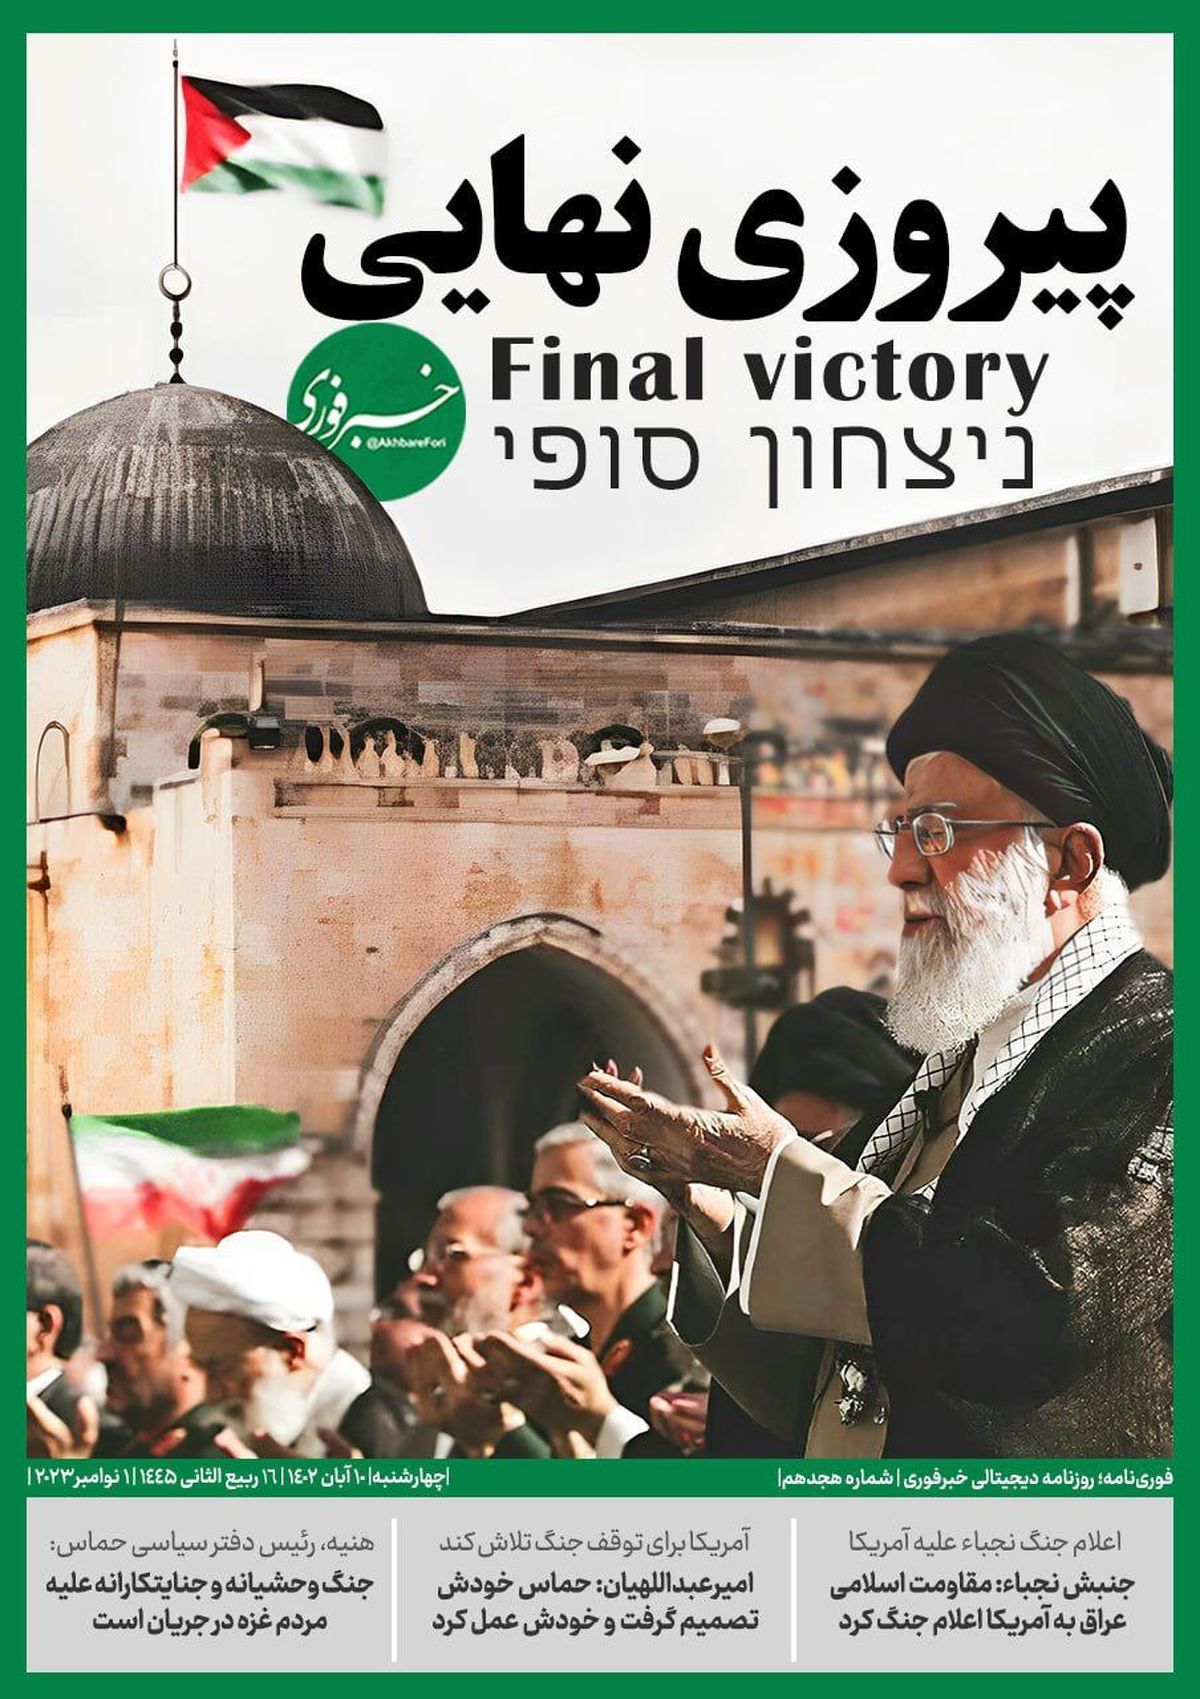 طرح جلد جالب روزنامه دیجیتالی خبرفوری با تیتر پیروزی نهایی